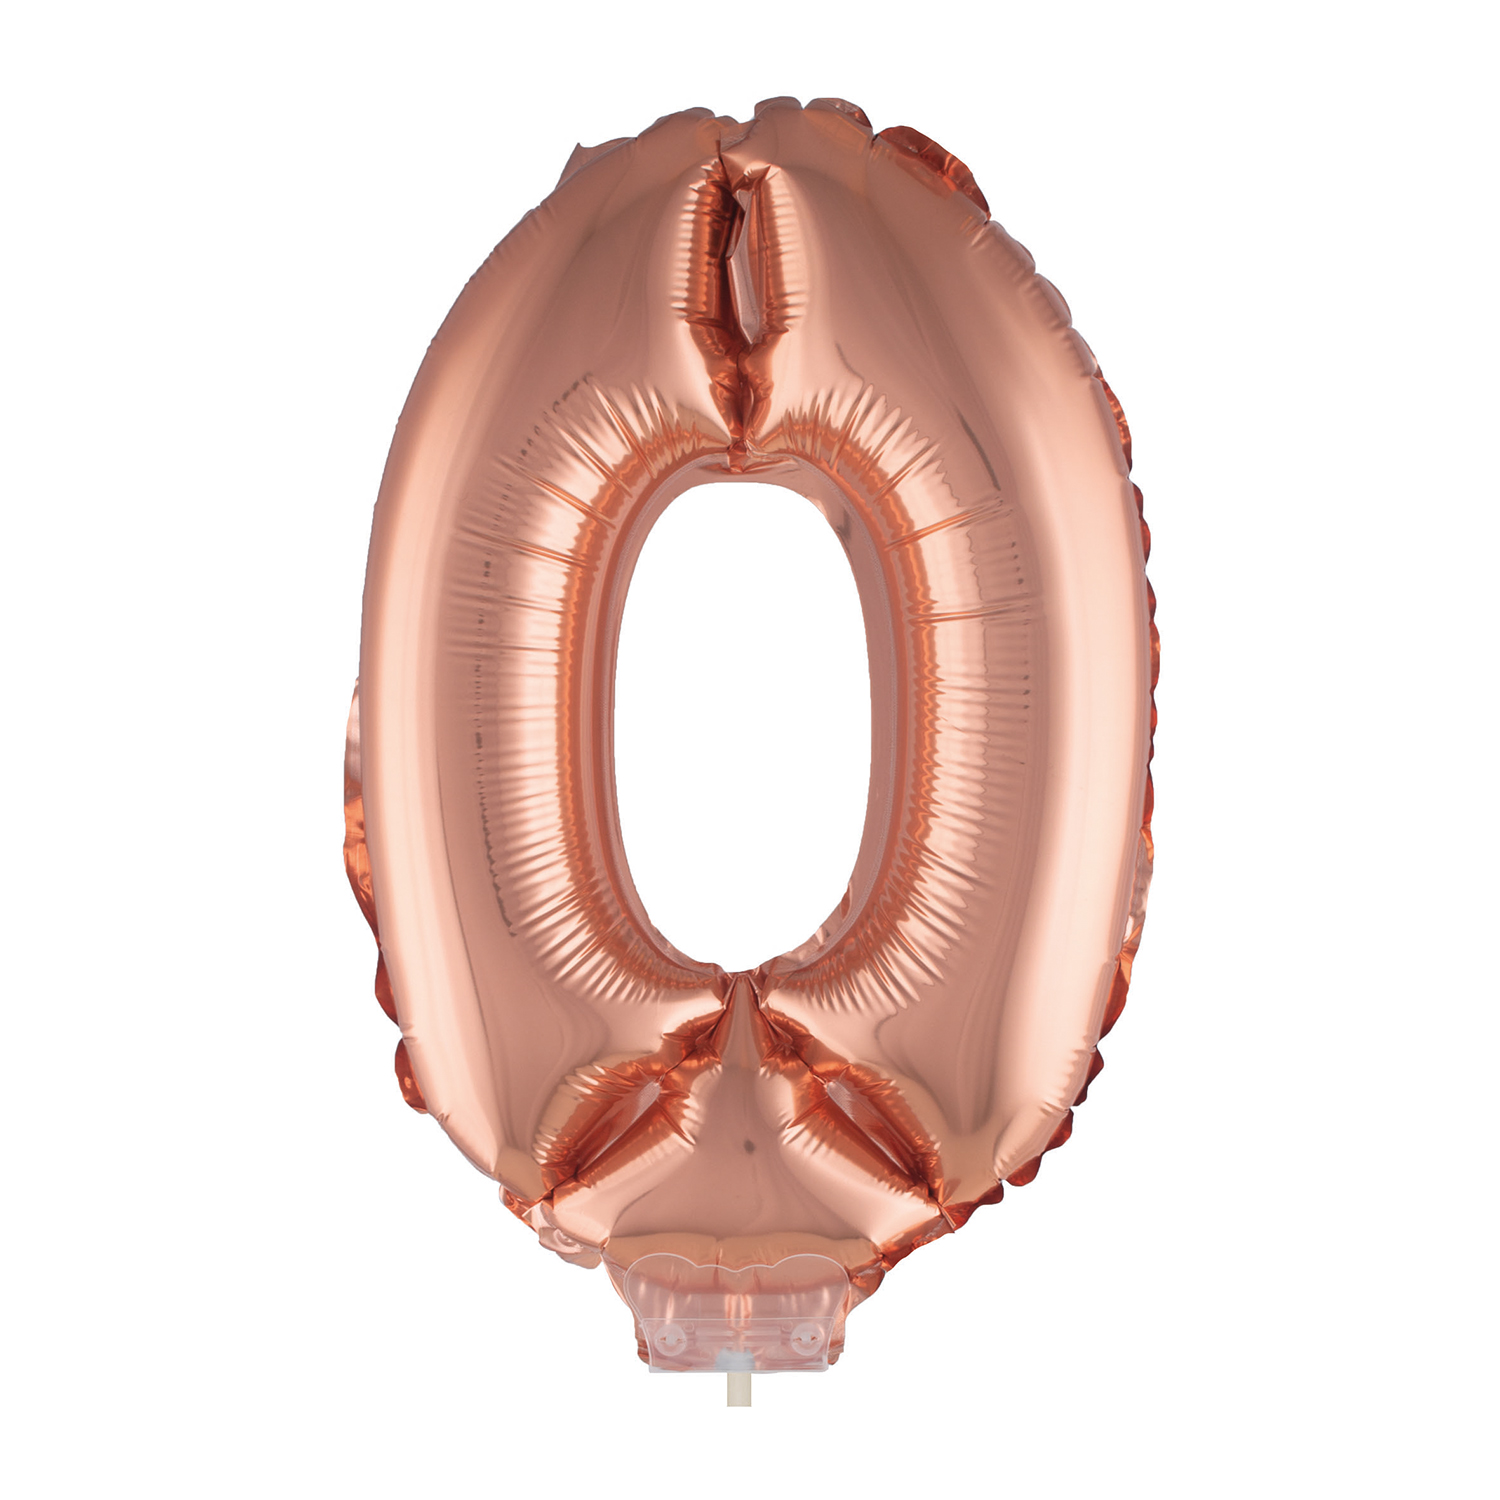 NEU Mini-Folienballon am Papierstbchen, Zahl 0, ros-gold / kupfer, ca. 40cm